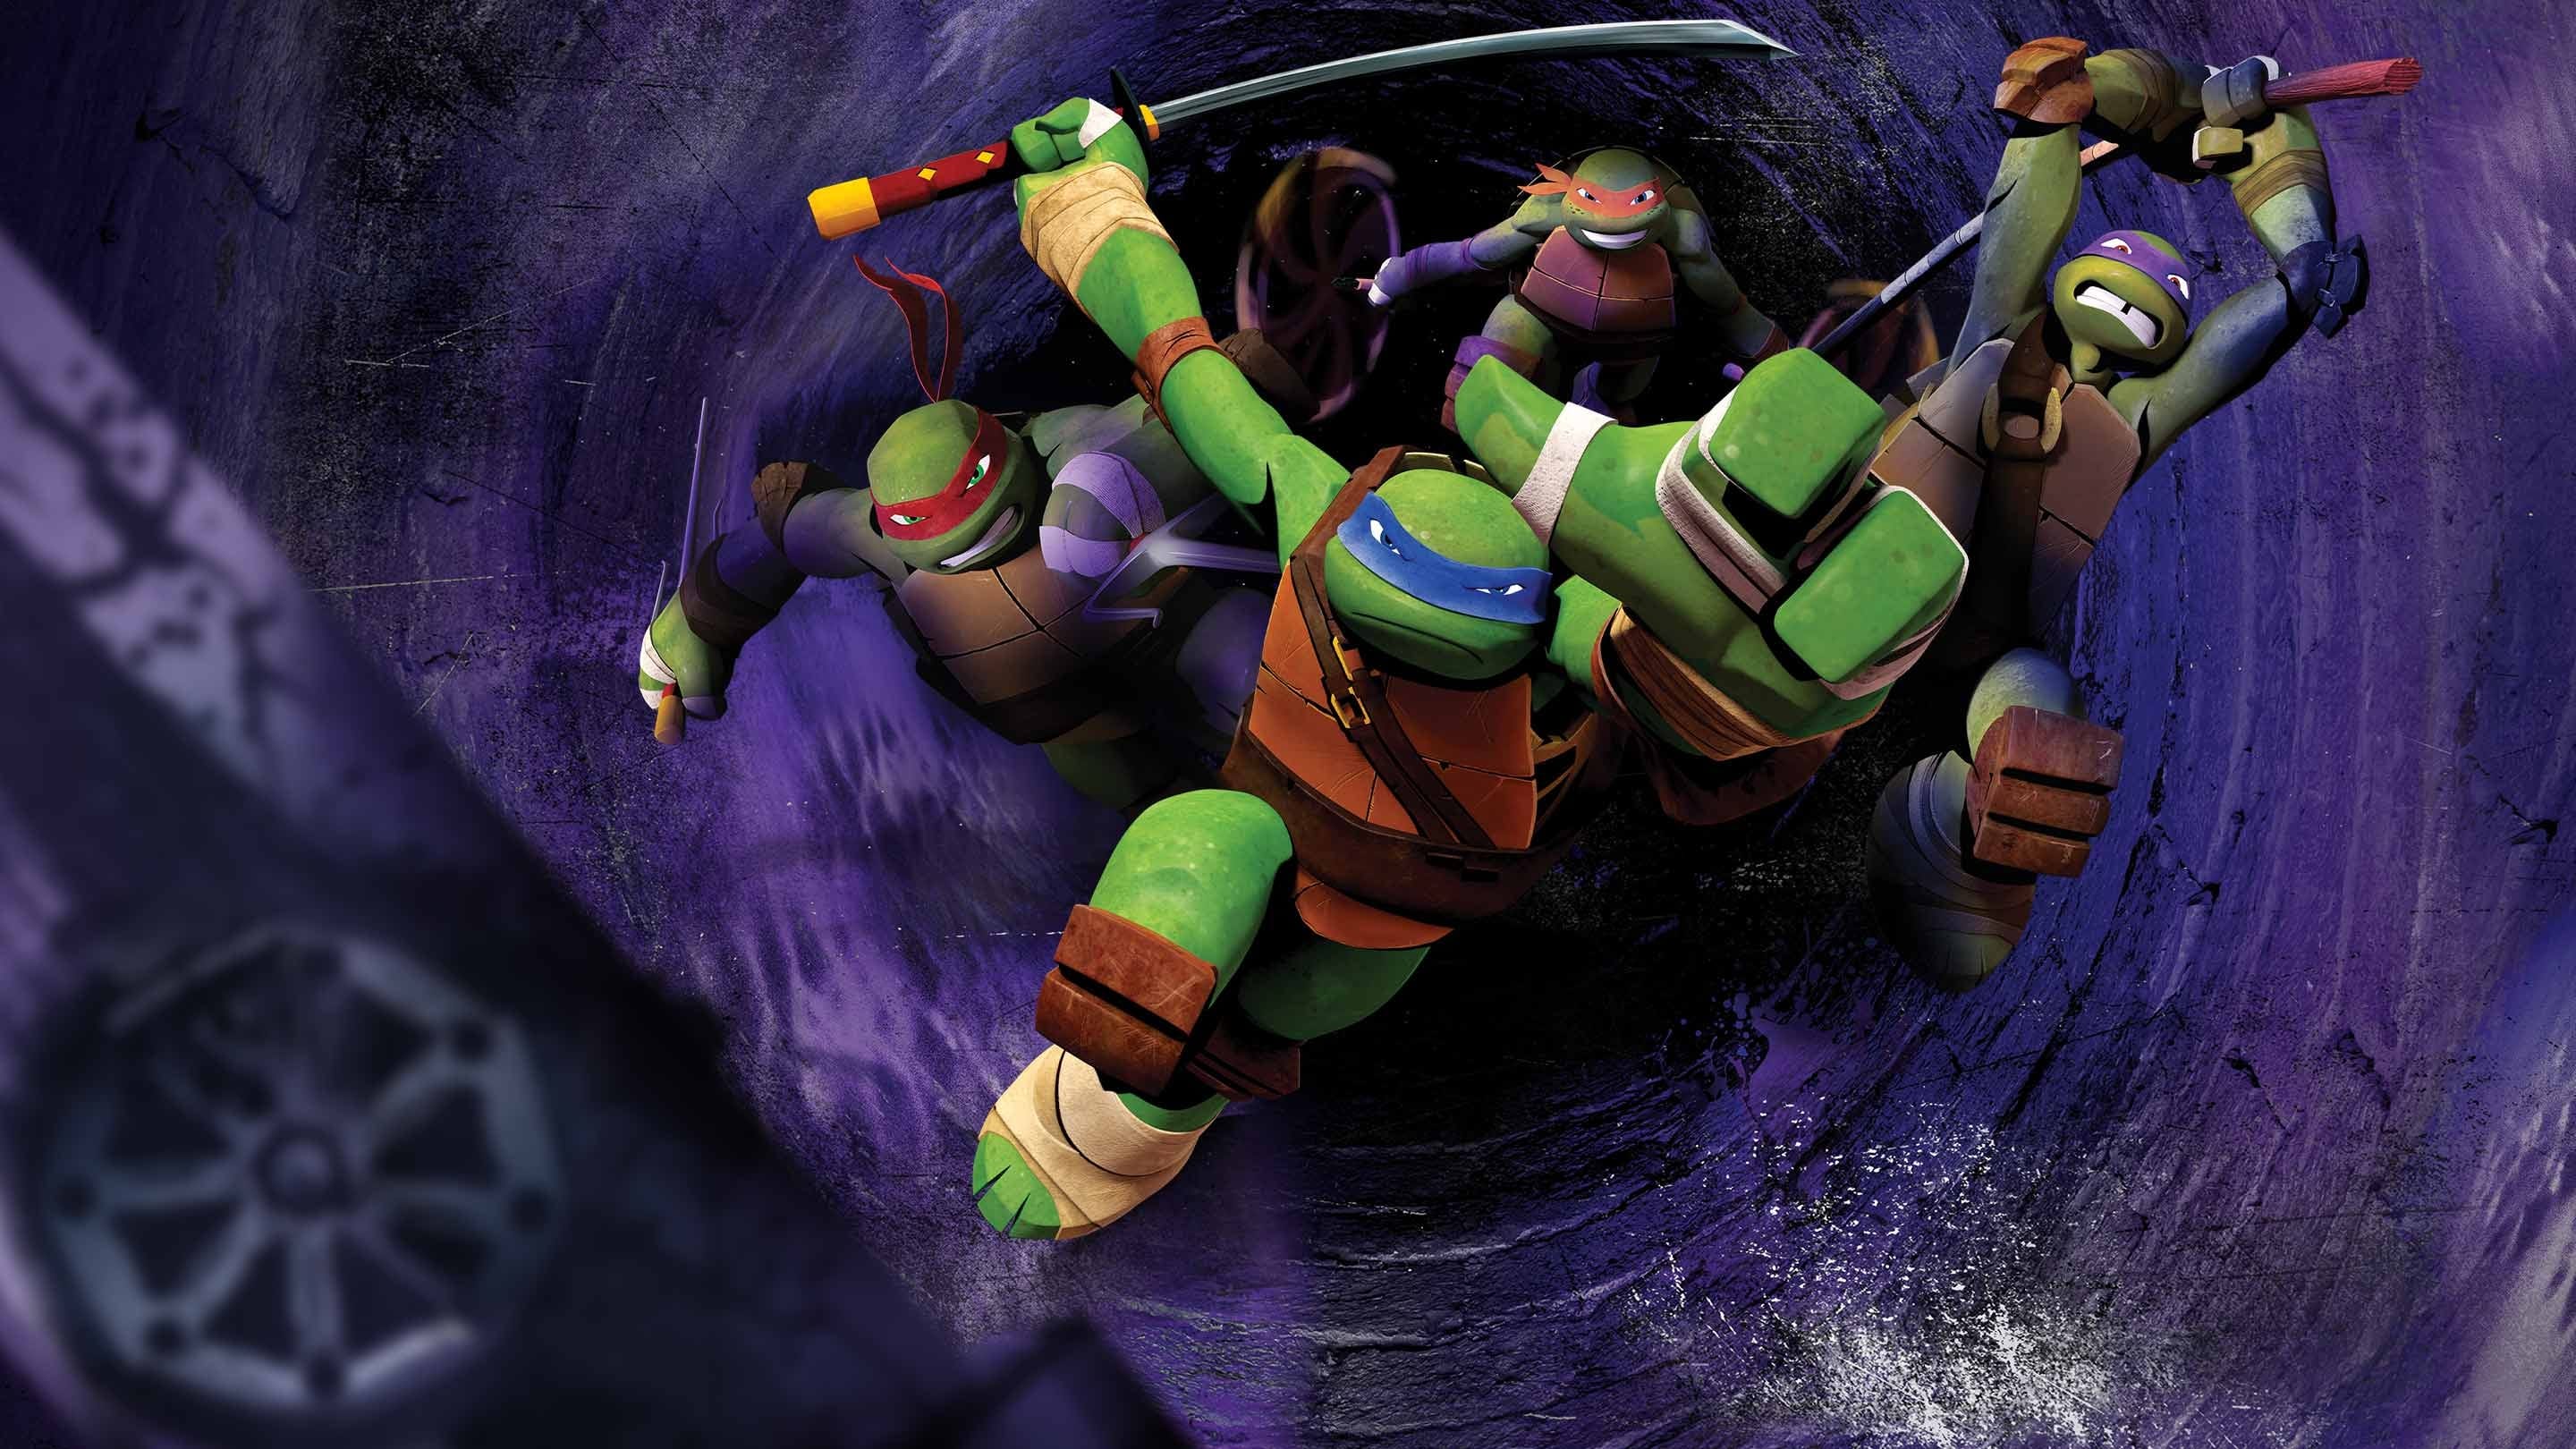 Las tortugas ninja